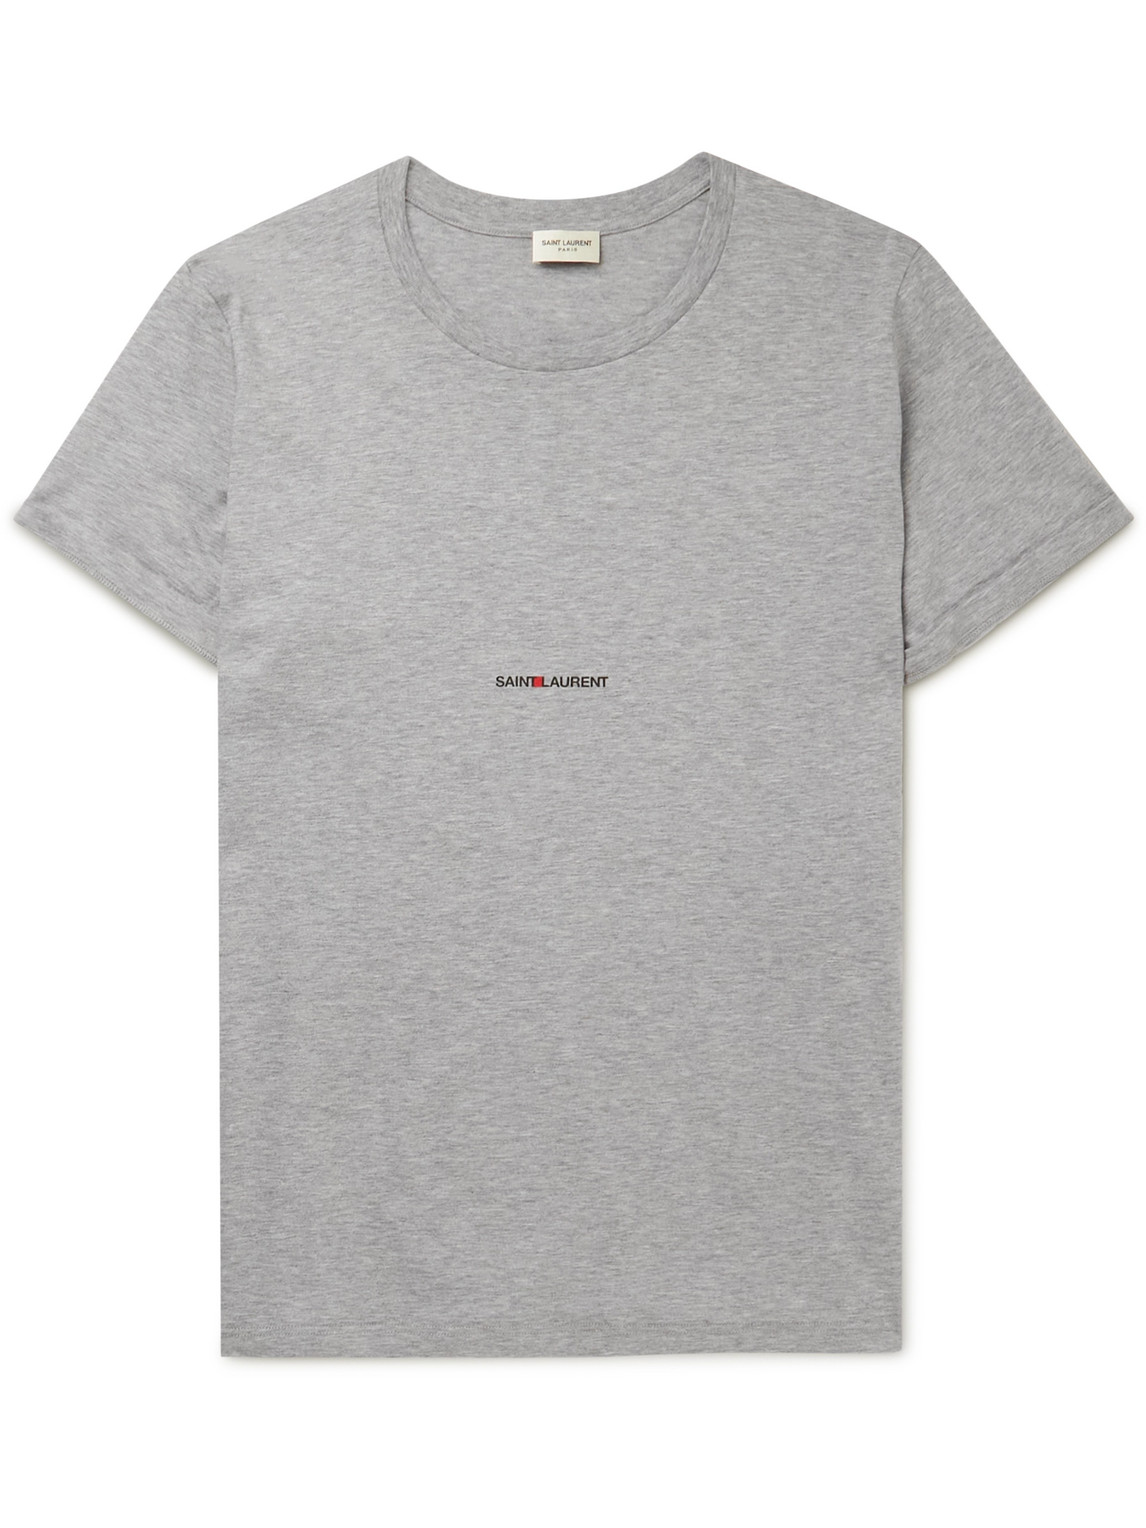 SAINT LAURENT Slim-Fit Logo-Print Cotton-Jersey T-Shirt